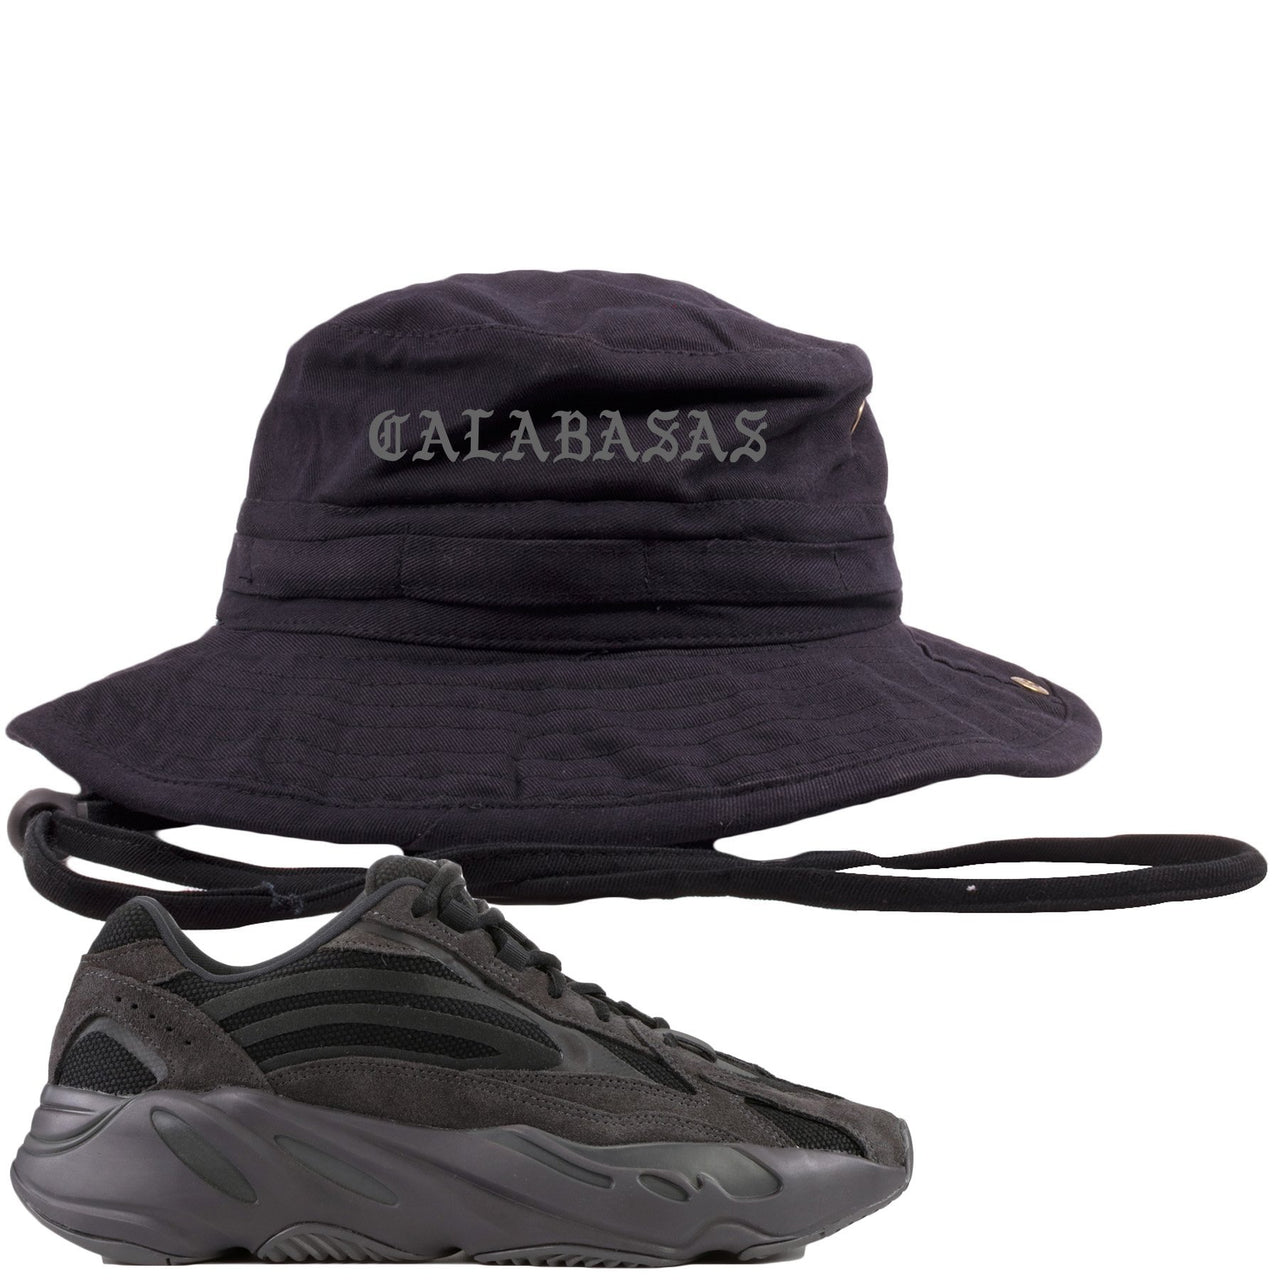 Vanta v2 700s Bucket Hat | Calabasas, Black